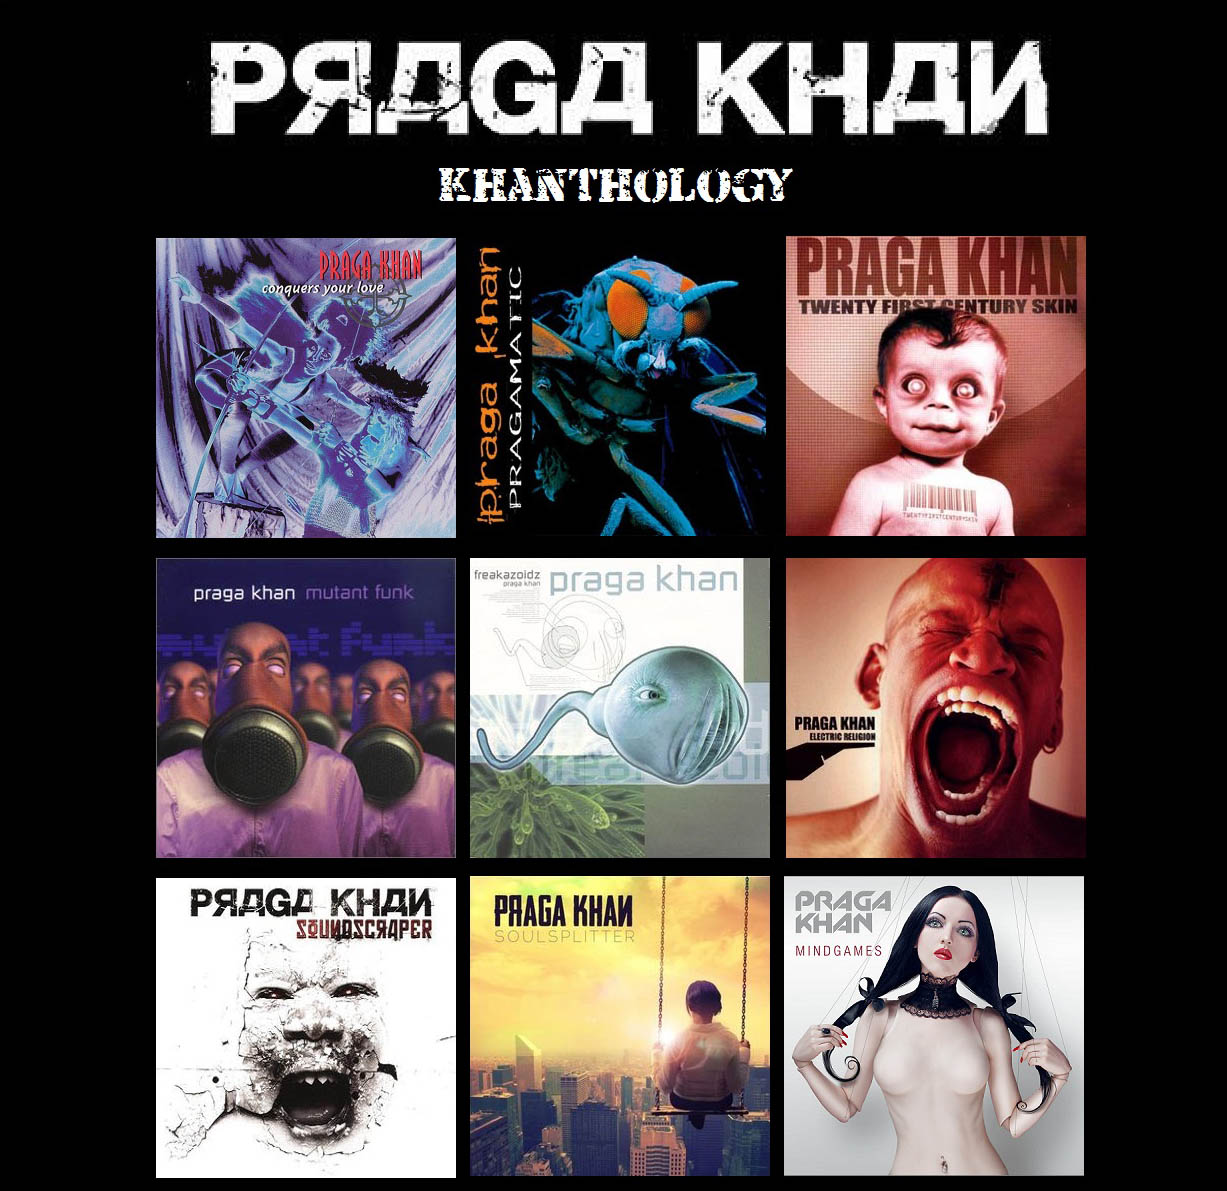 Praga Khan - Bad Company